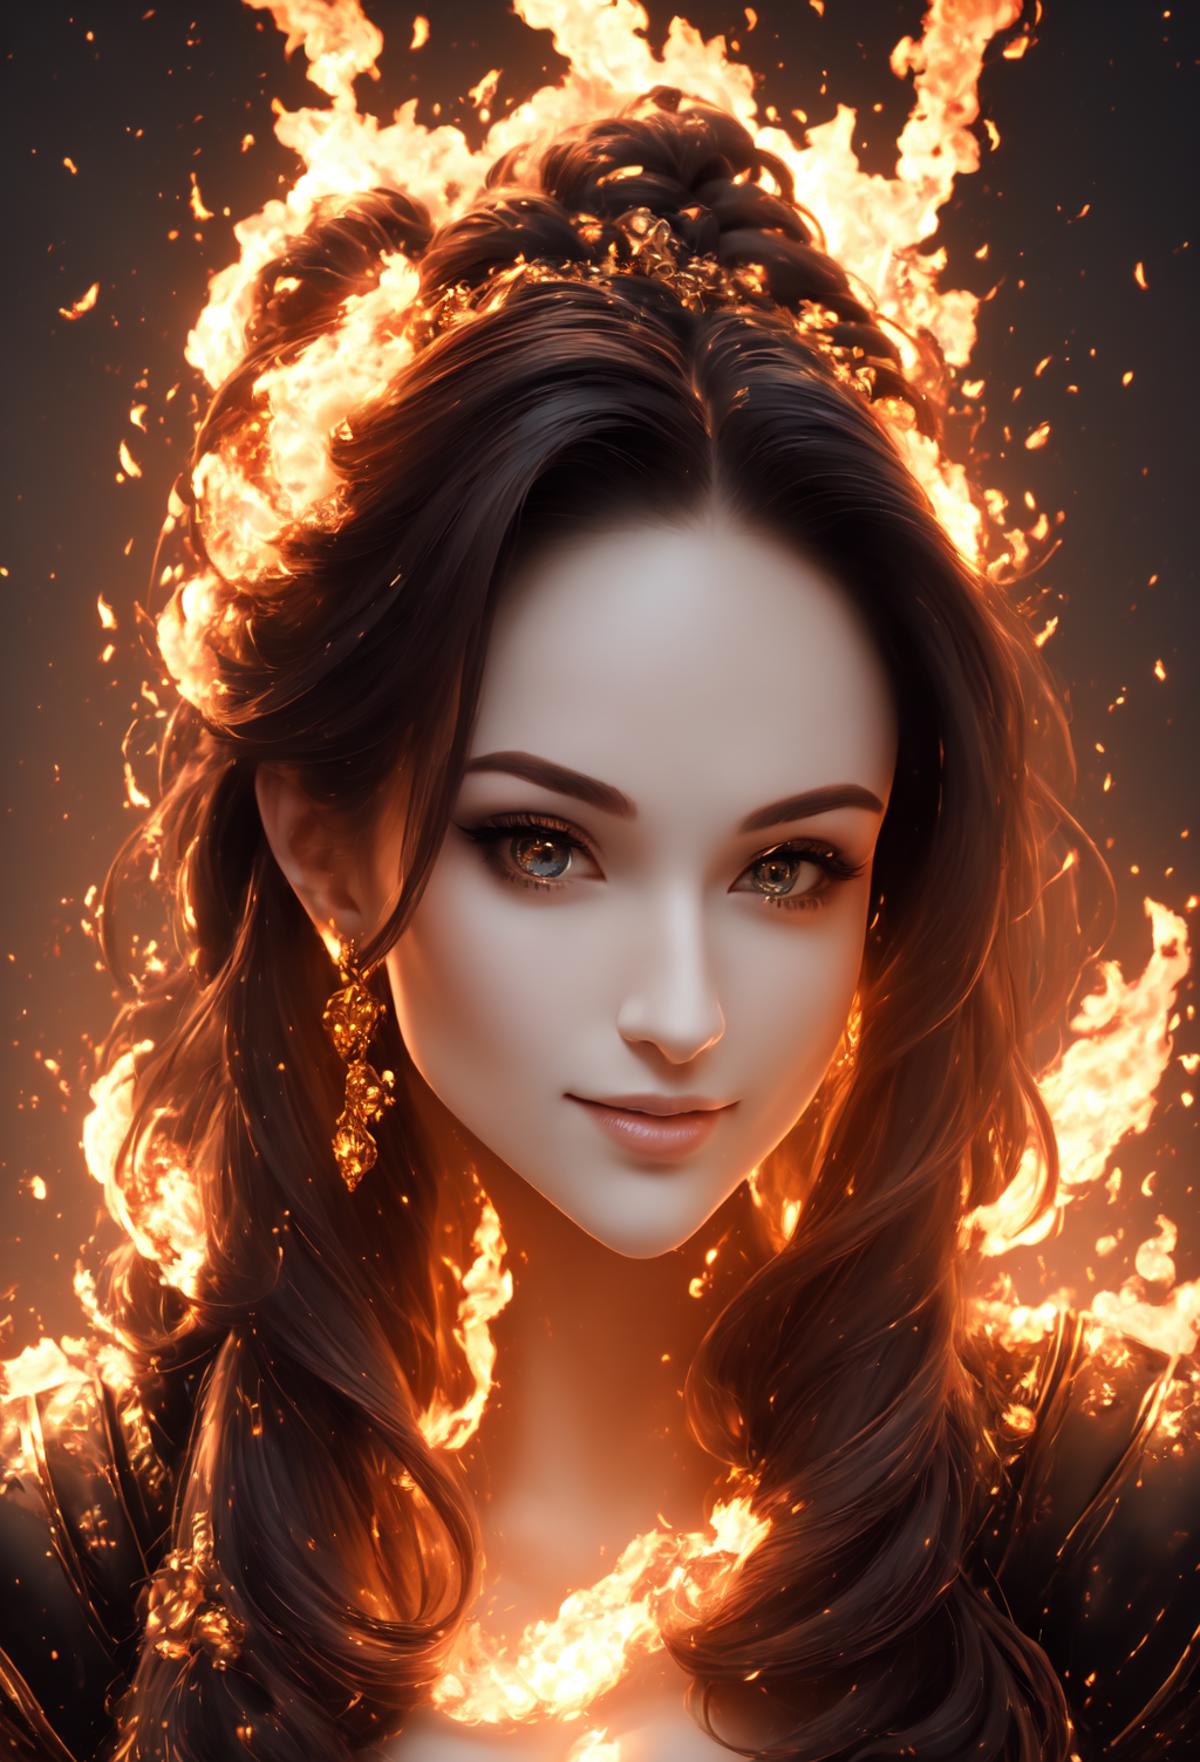 Fire portrait lora image by Trex